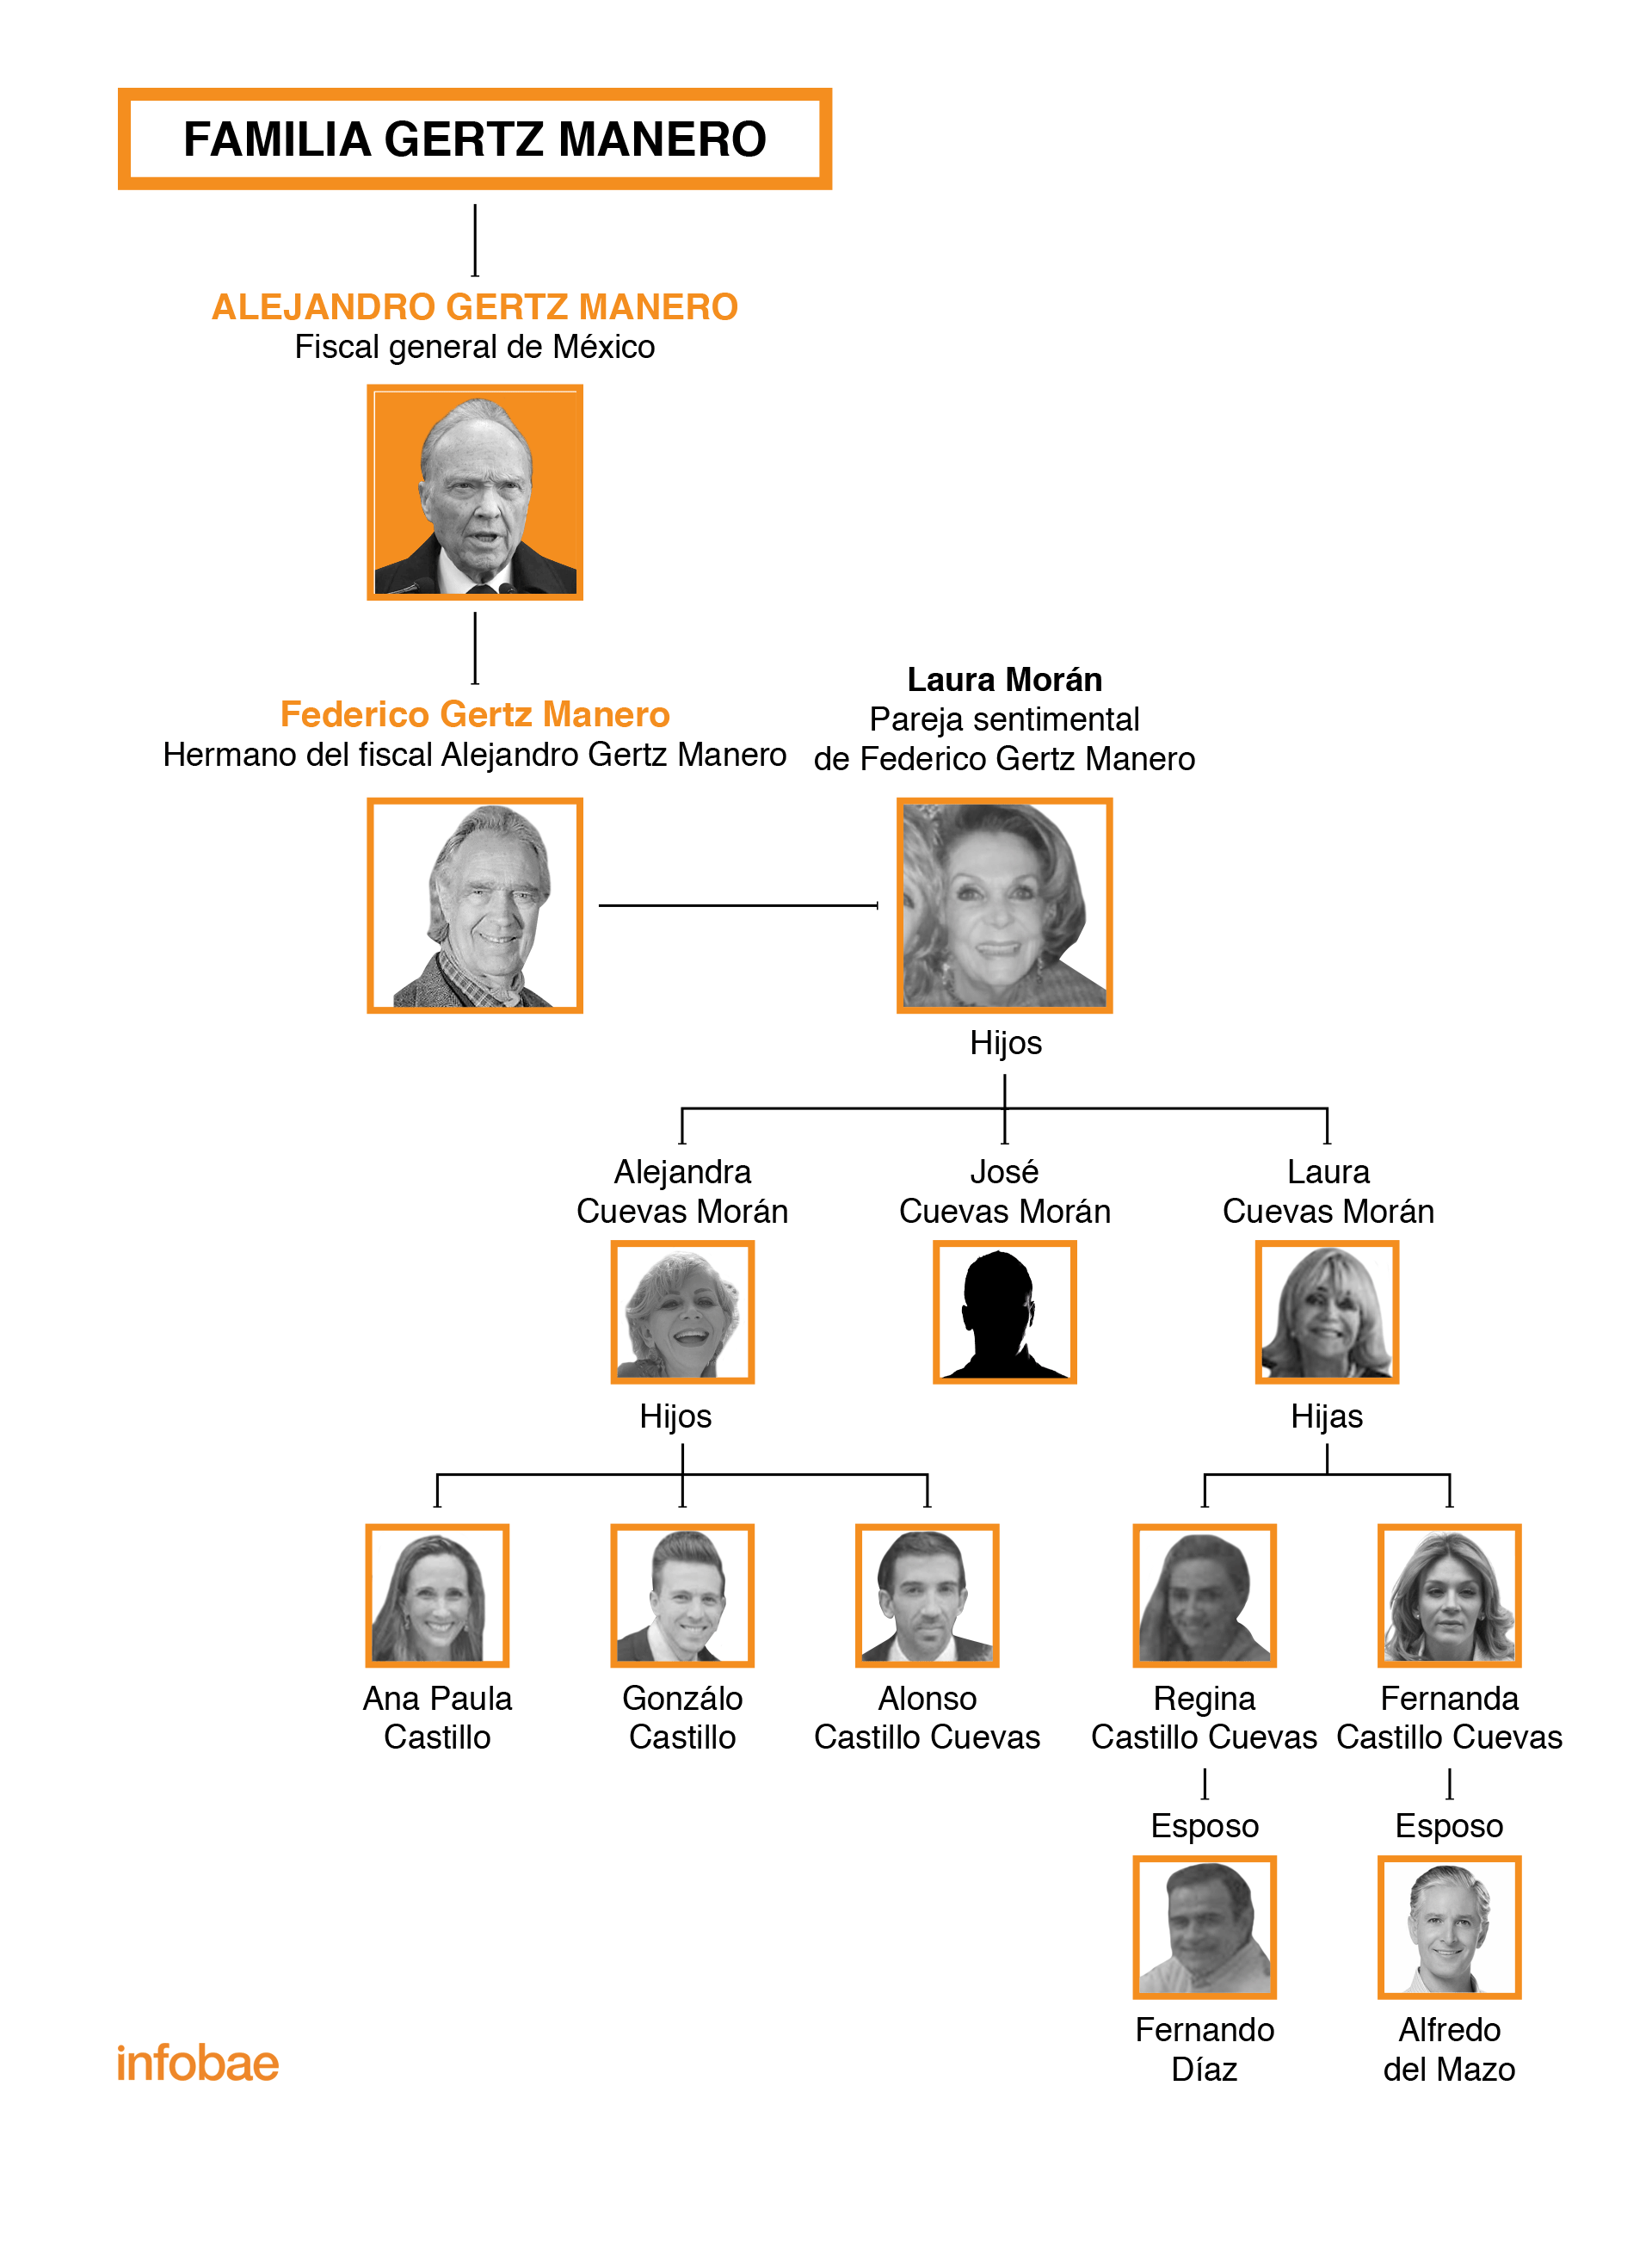 La disputa del fiscal Gertz Manero con su familia política (Imagen: INFOBAE)